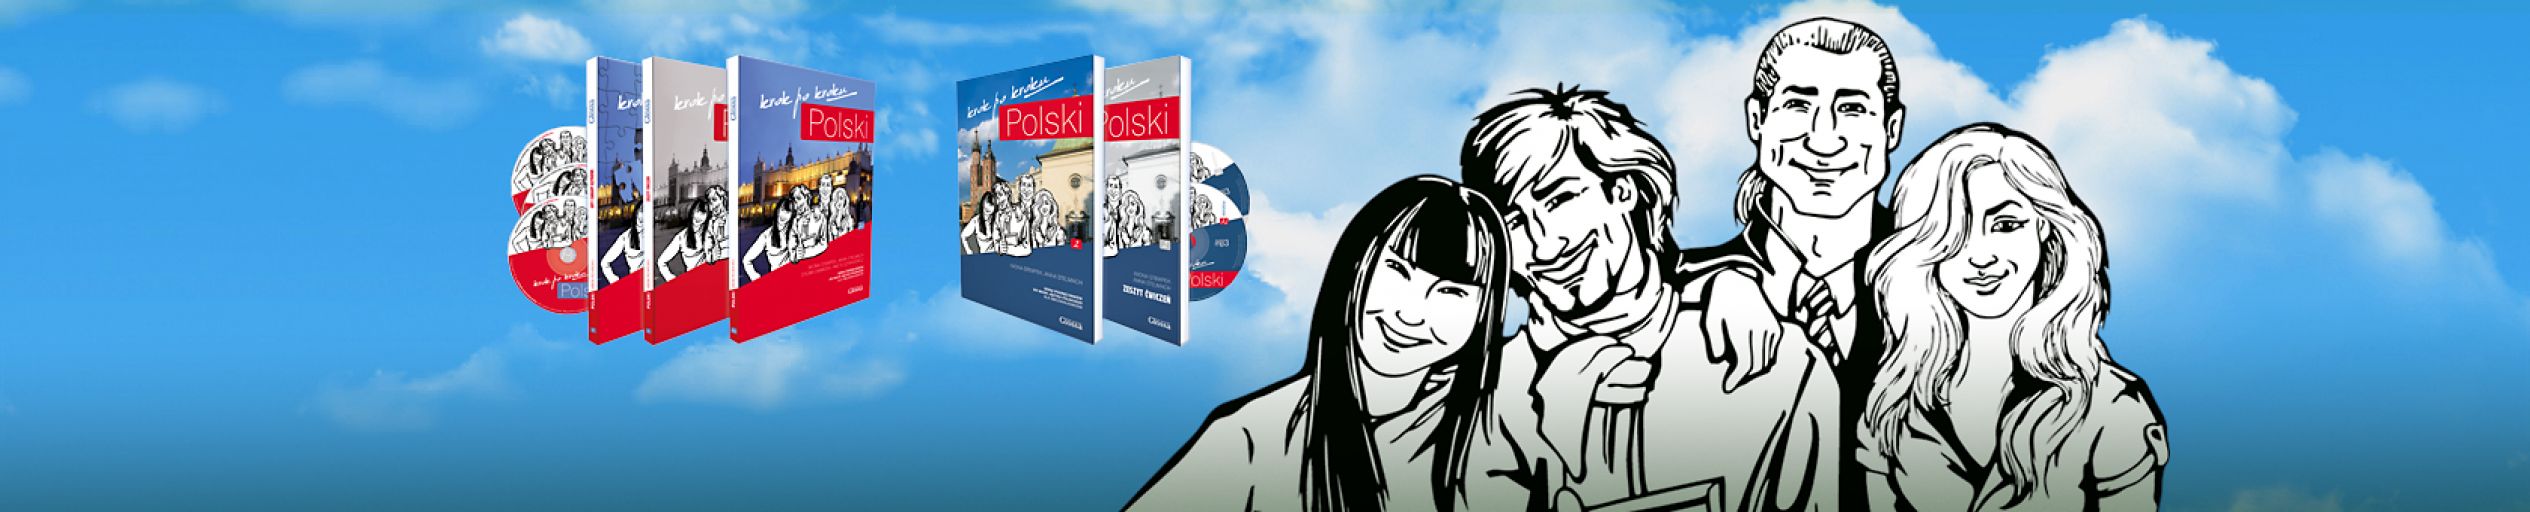 POLSKI  krok po  kroku - les manuels les plus modernes et polyvalents disponibles actuellement sur le marché